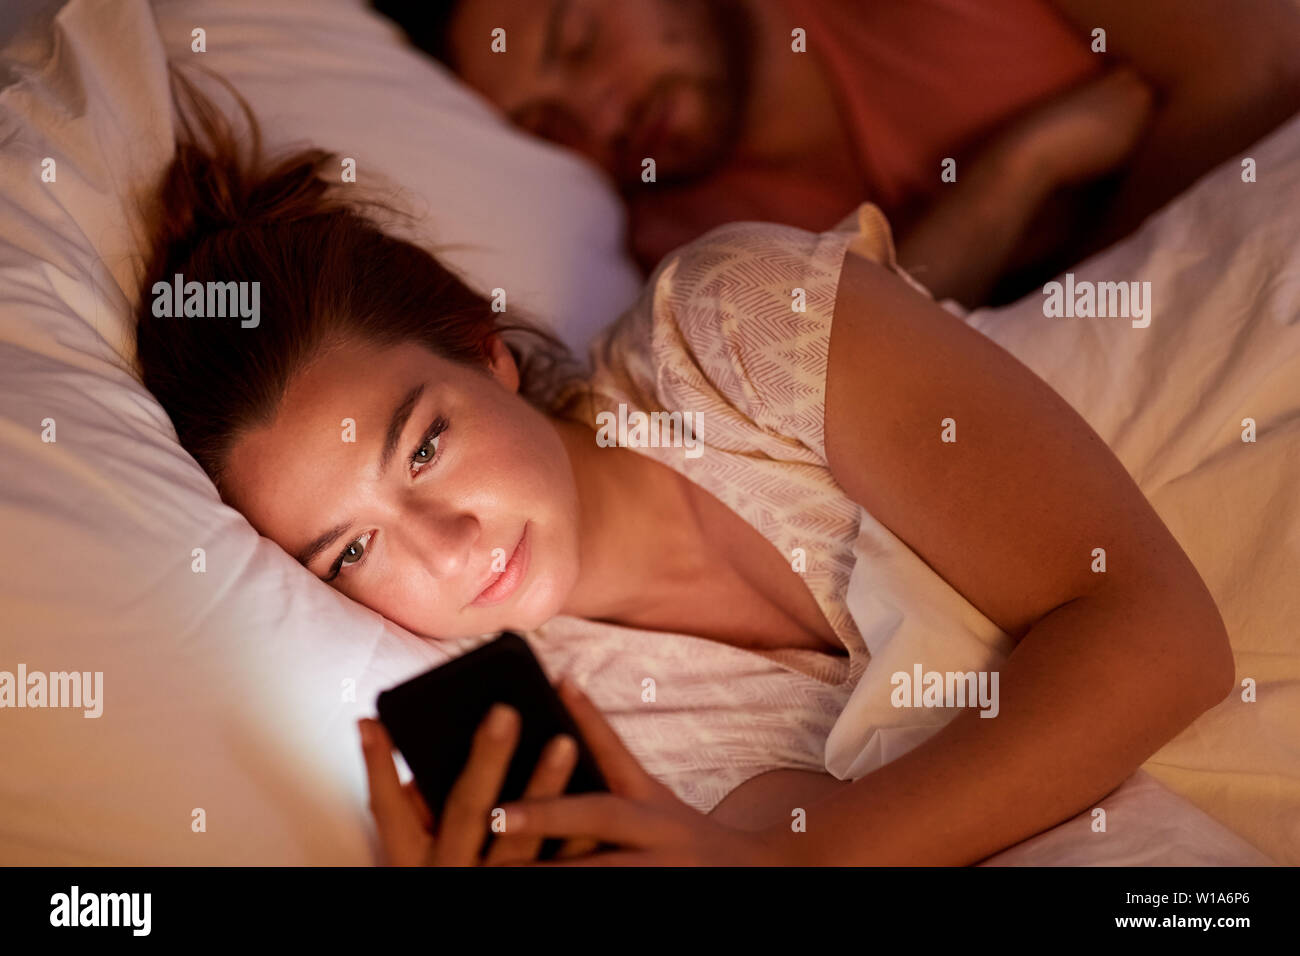 Woman using smartphone alors qu'ami est en train de dormir Banque D'Images